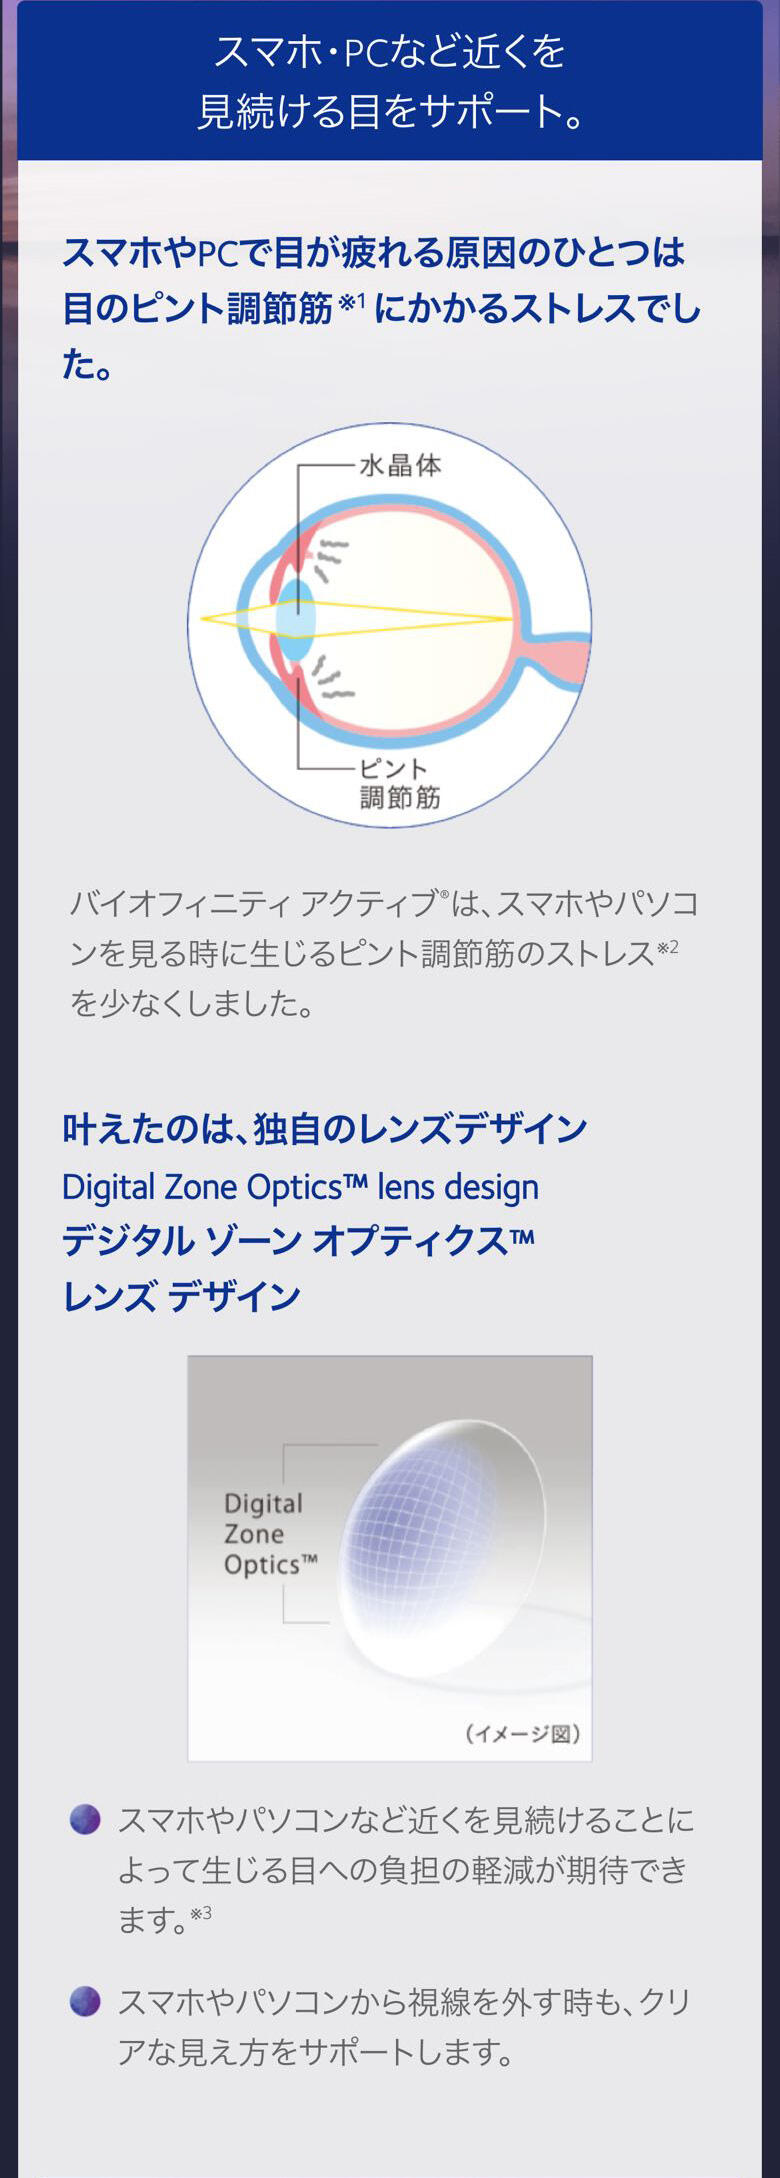 スマホ・PCなど近くを見続ける目をサポート。 スマホやPCで目が疲れる原因のひとつは 目のピント調節筋※1にかかるストレスでした。 バイオフィニティ アクティブ®は、 スマホやパソコンを見る時に 生じるピント調節筋のストレス※2を少なくしました。 叶えたのは、独自のレンズデザイン Digital Zone Optics™ lens design デジタル ゾーン オプティクス™ レンズ デザイン スマホやパソコンなど近くを見続けることによって 生じる目への負担の軽減が期待できます。※3 スマホやパソコンから視線を外す時も、 クリアな見え方をサポートします。